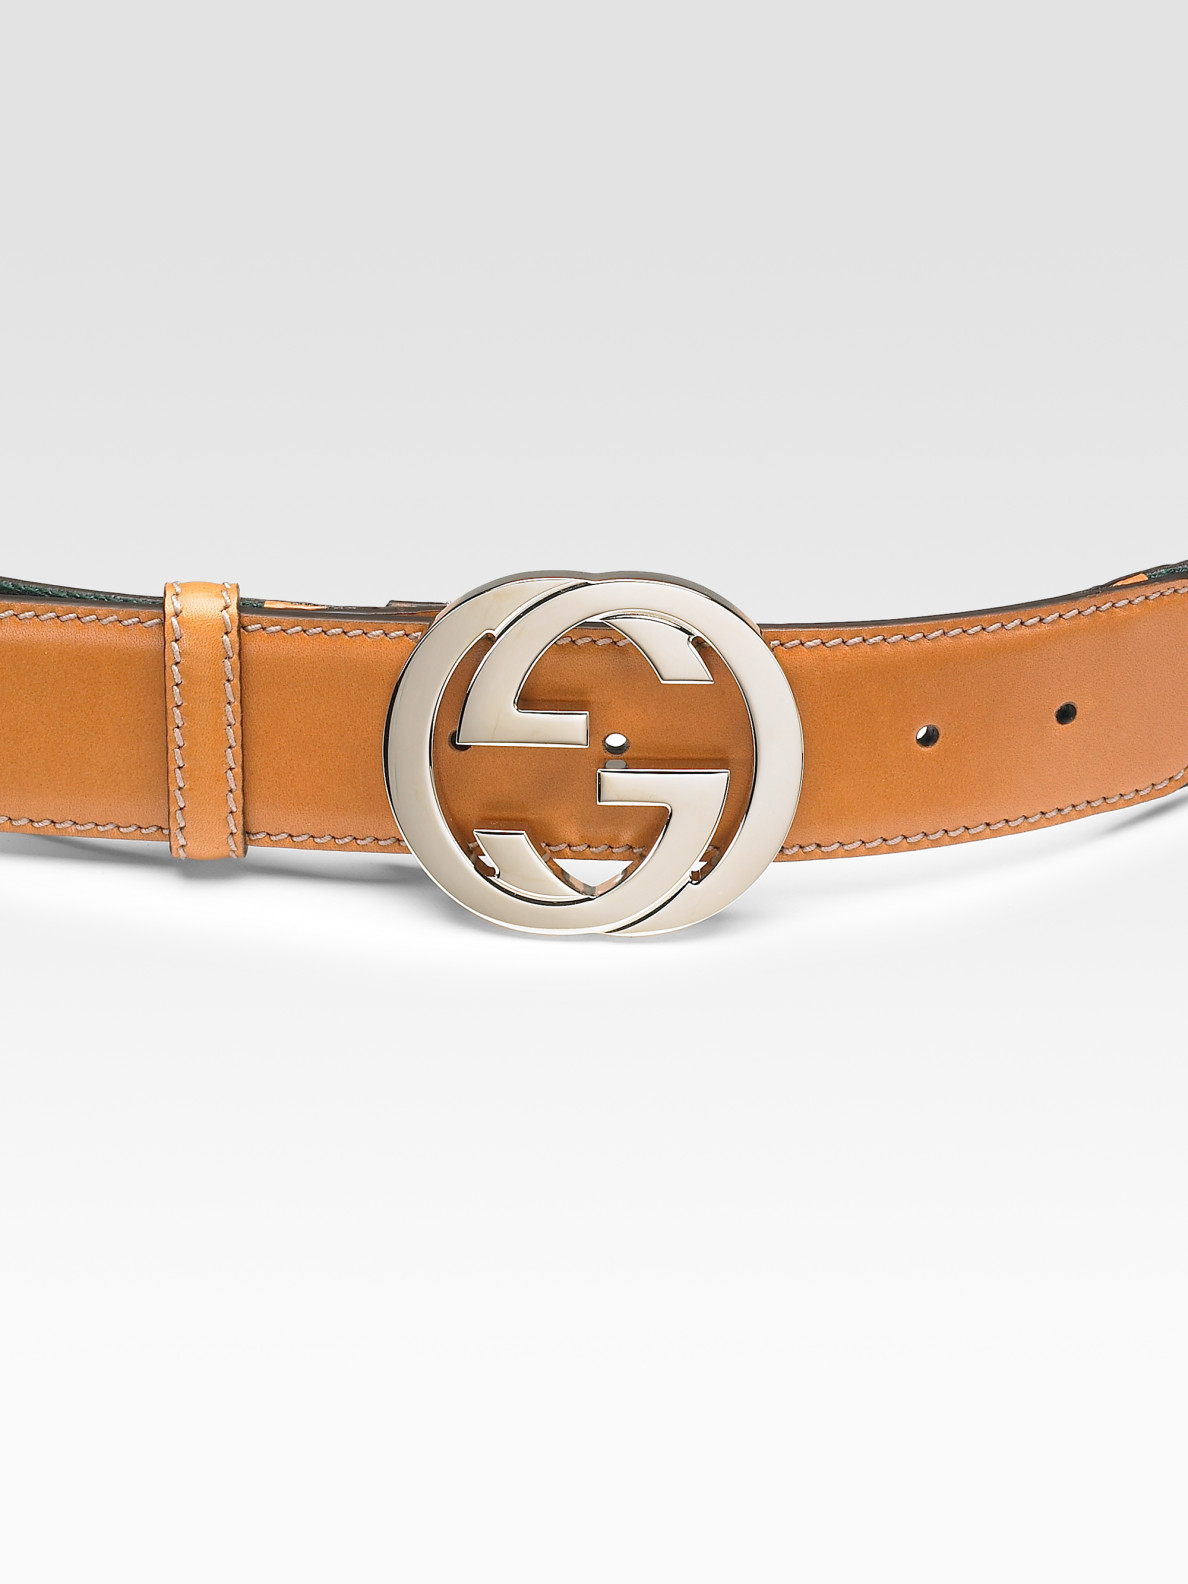 Gucci Interlocking G Buckle Belt in Tobacco (Brown) - Lyst